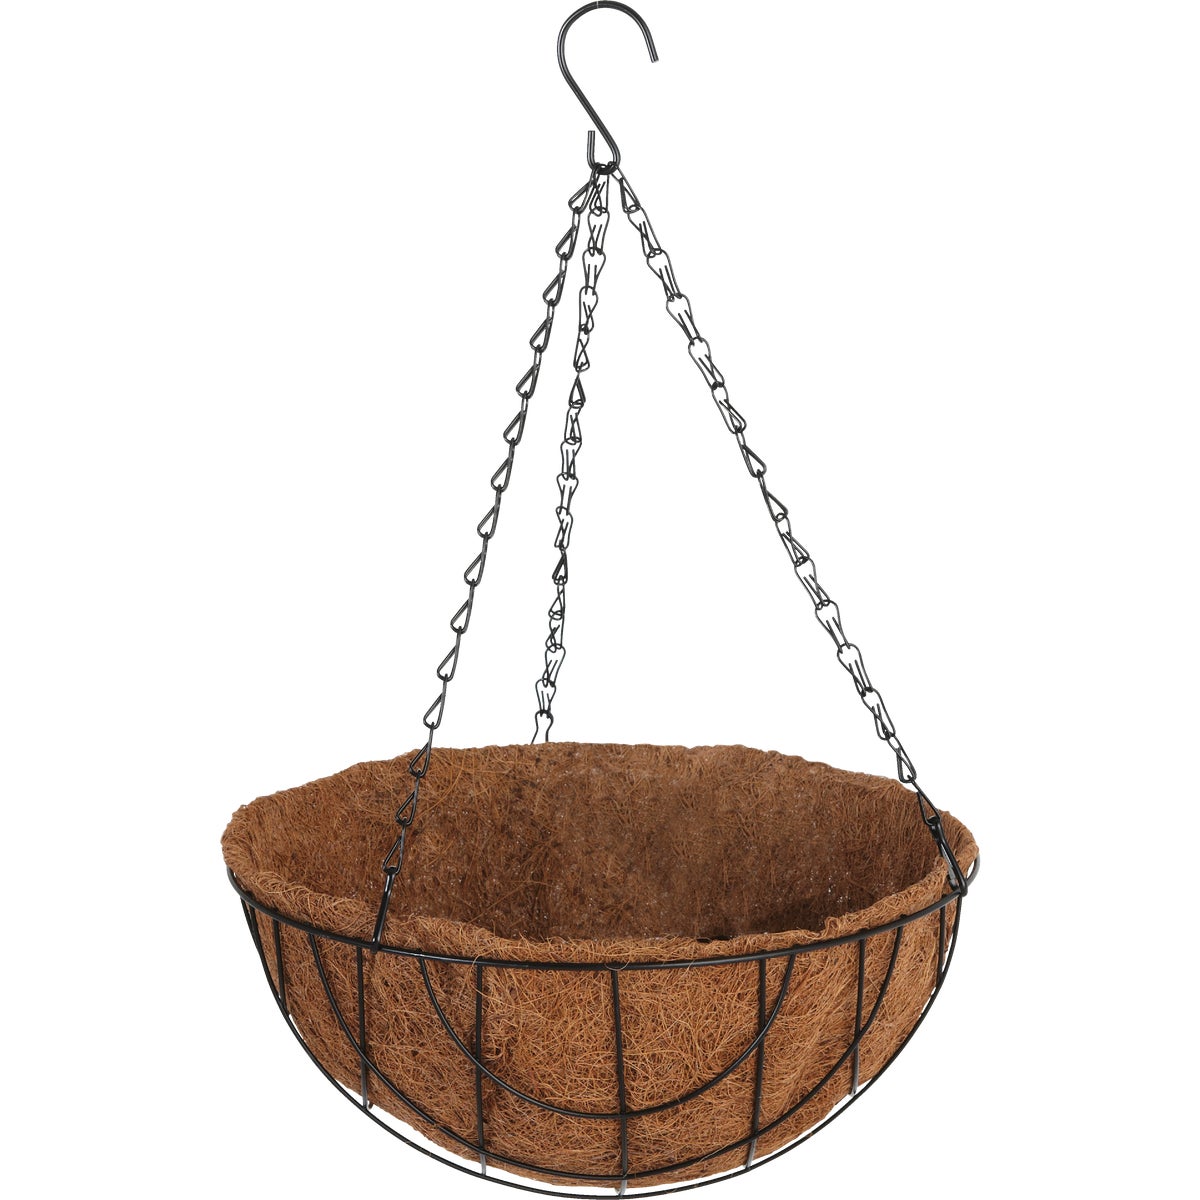 Item 703237, Classic design round hanging basket.